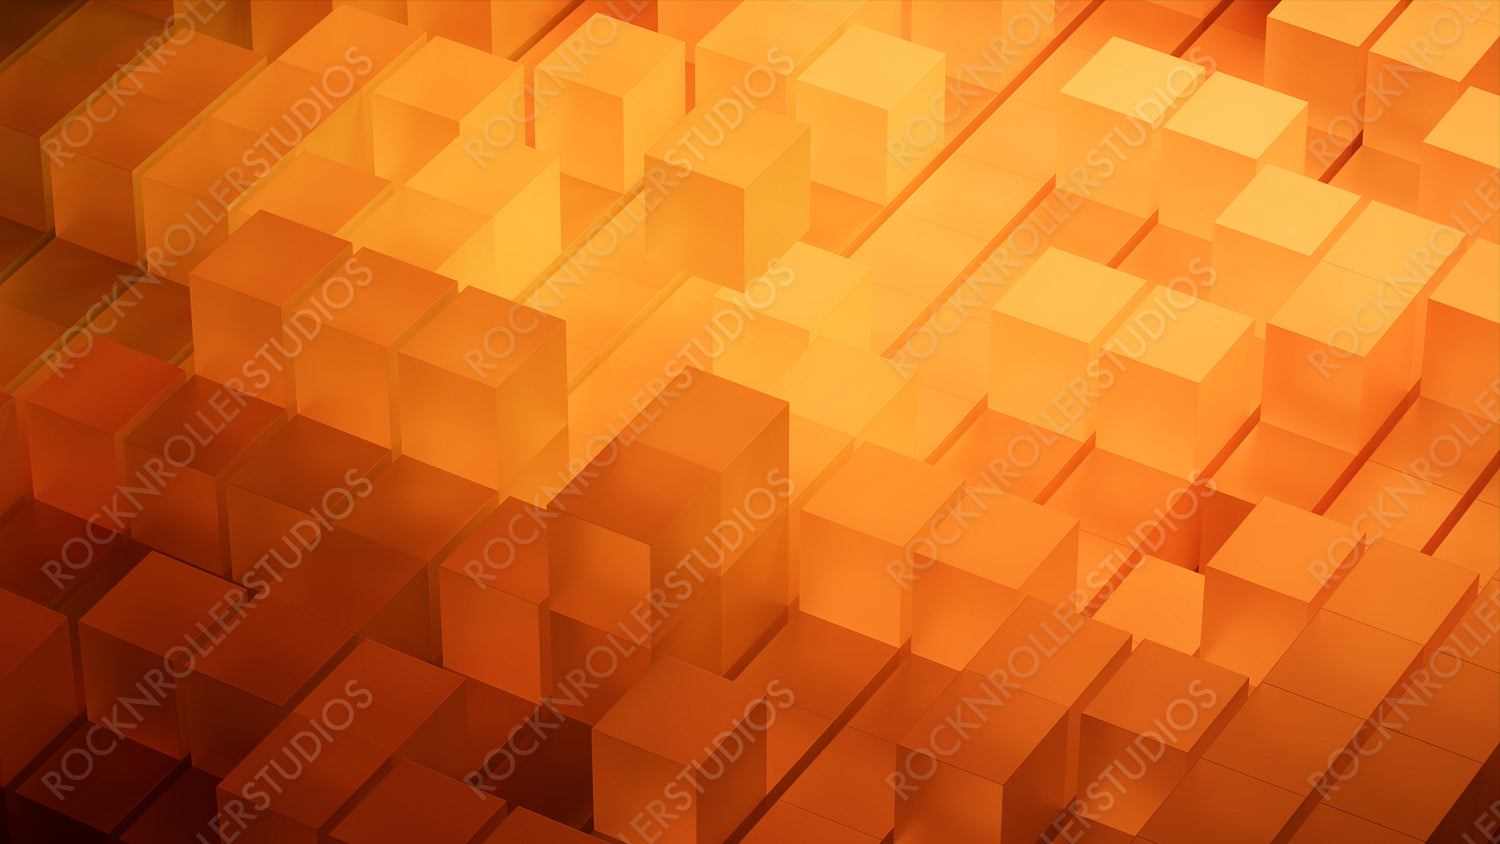 Orange and Yellow, Modern Tech Wallpaper. 3D Render.